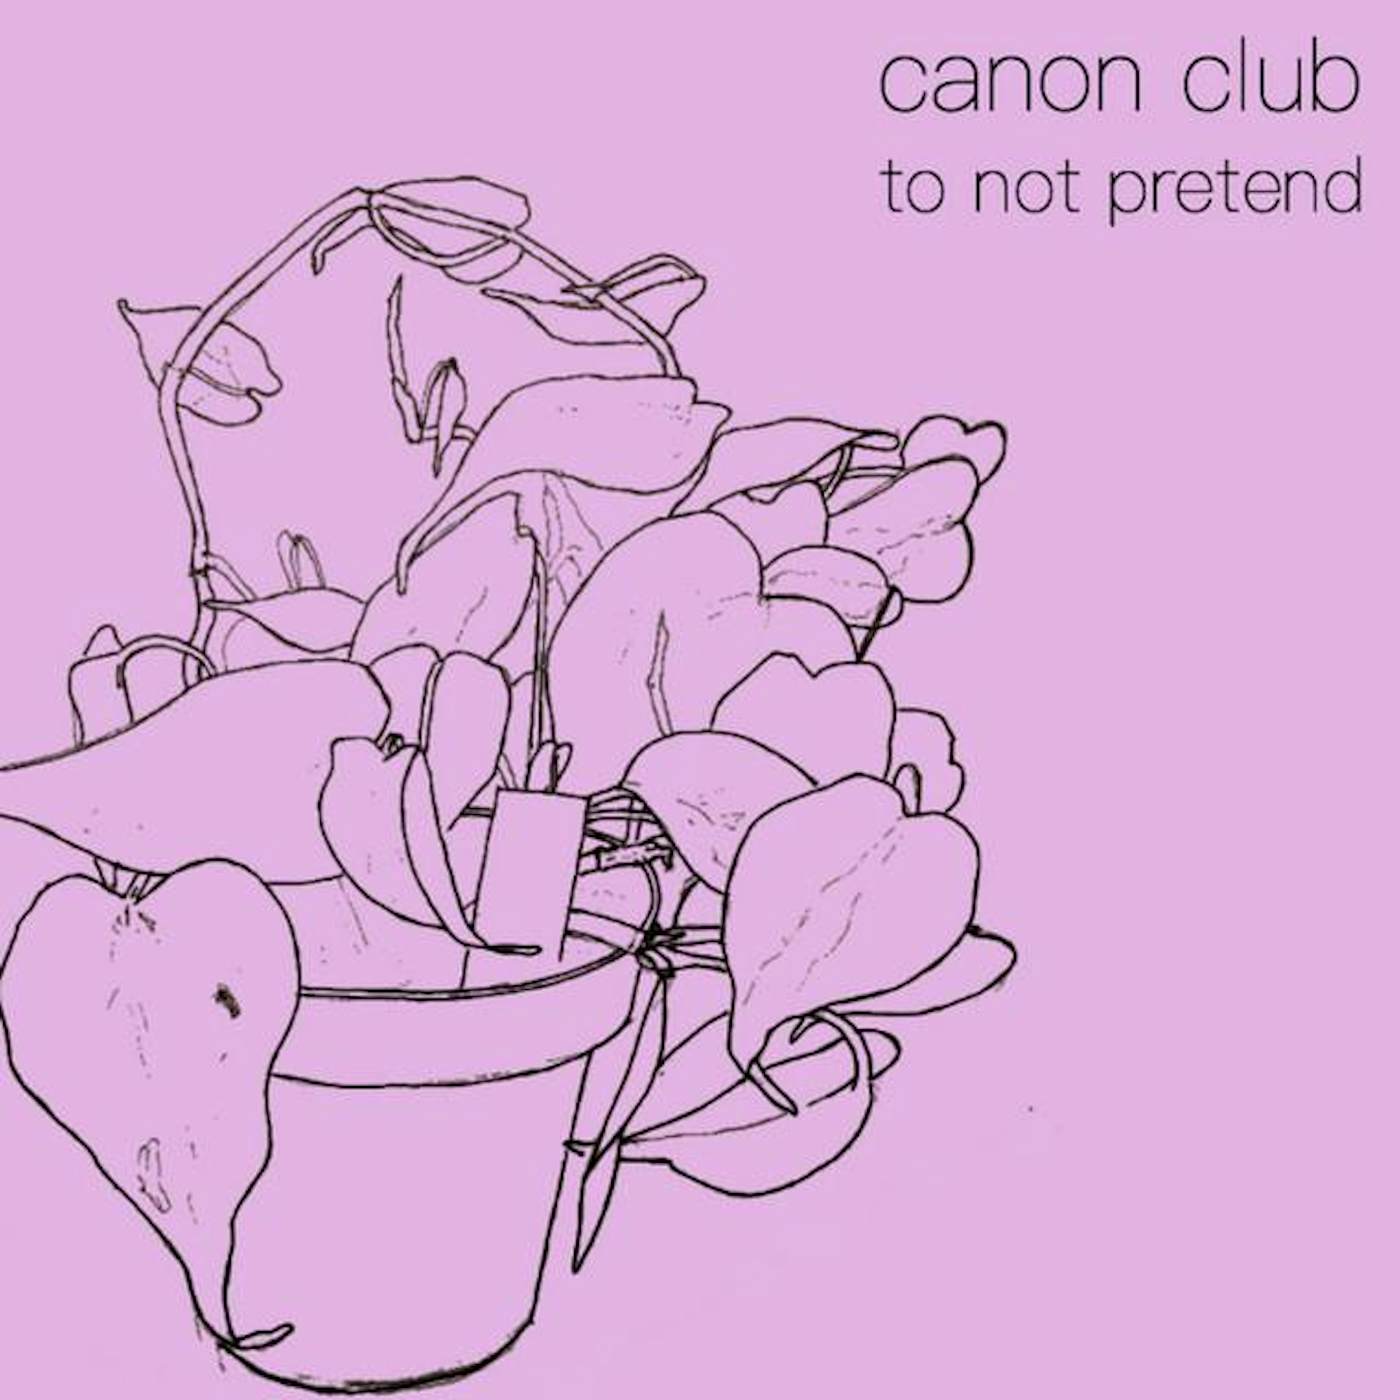 Canon Club